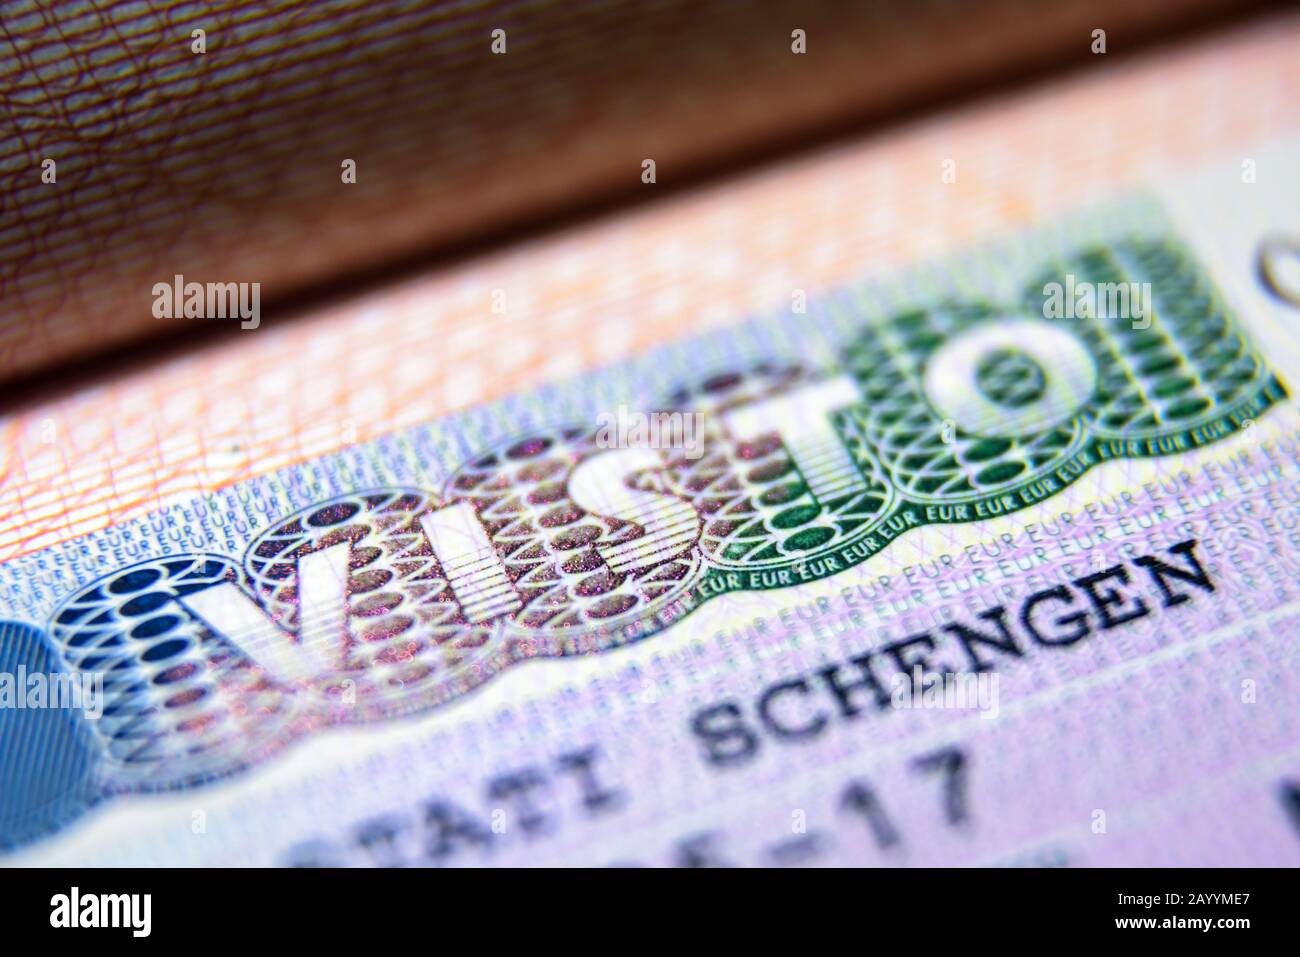 Stamping status visa F1 Visa